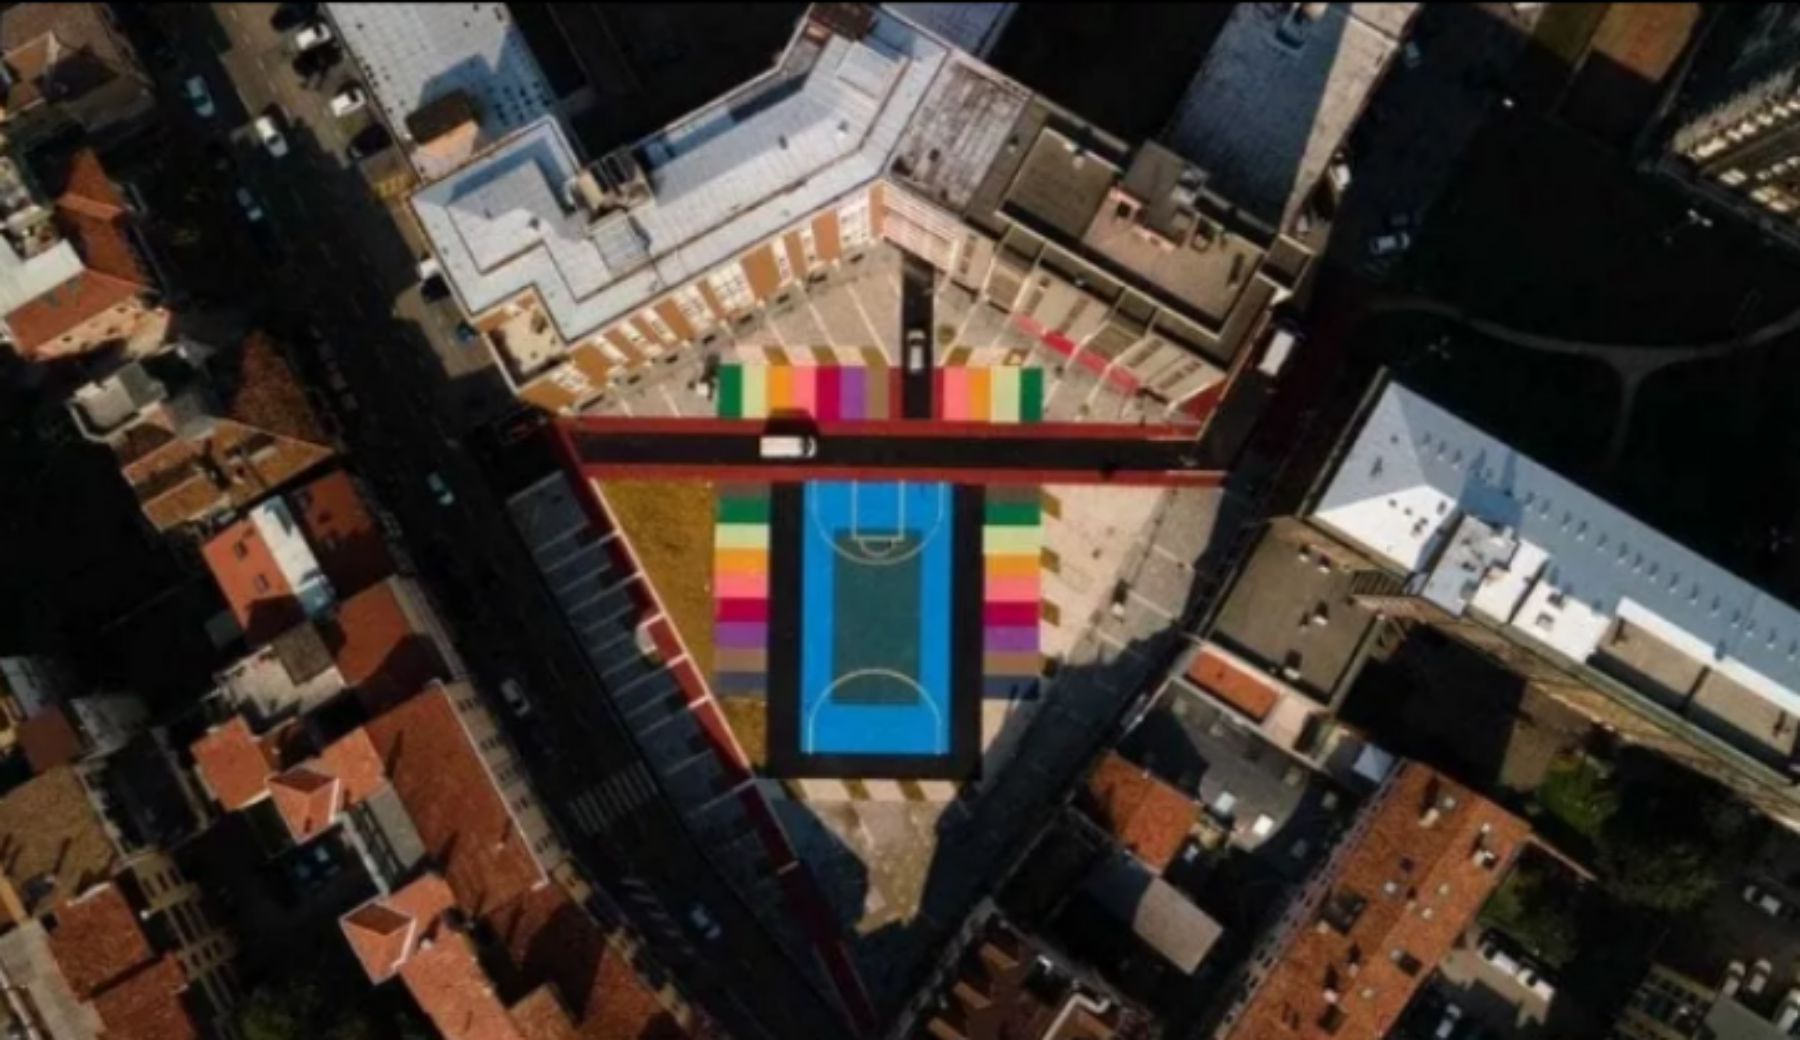 Padova, un campo di basket contro lo spaccio: la bella iniziativa per riqualificare un quartiere